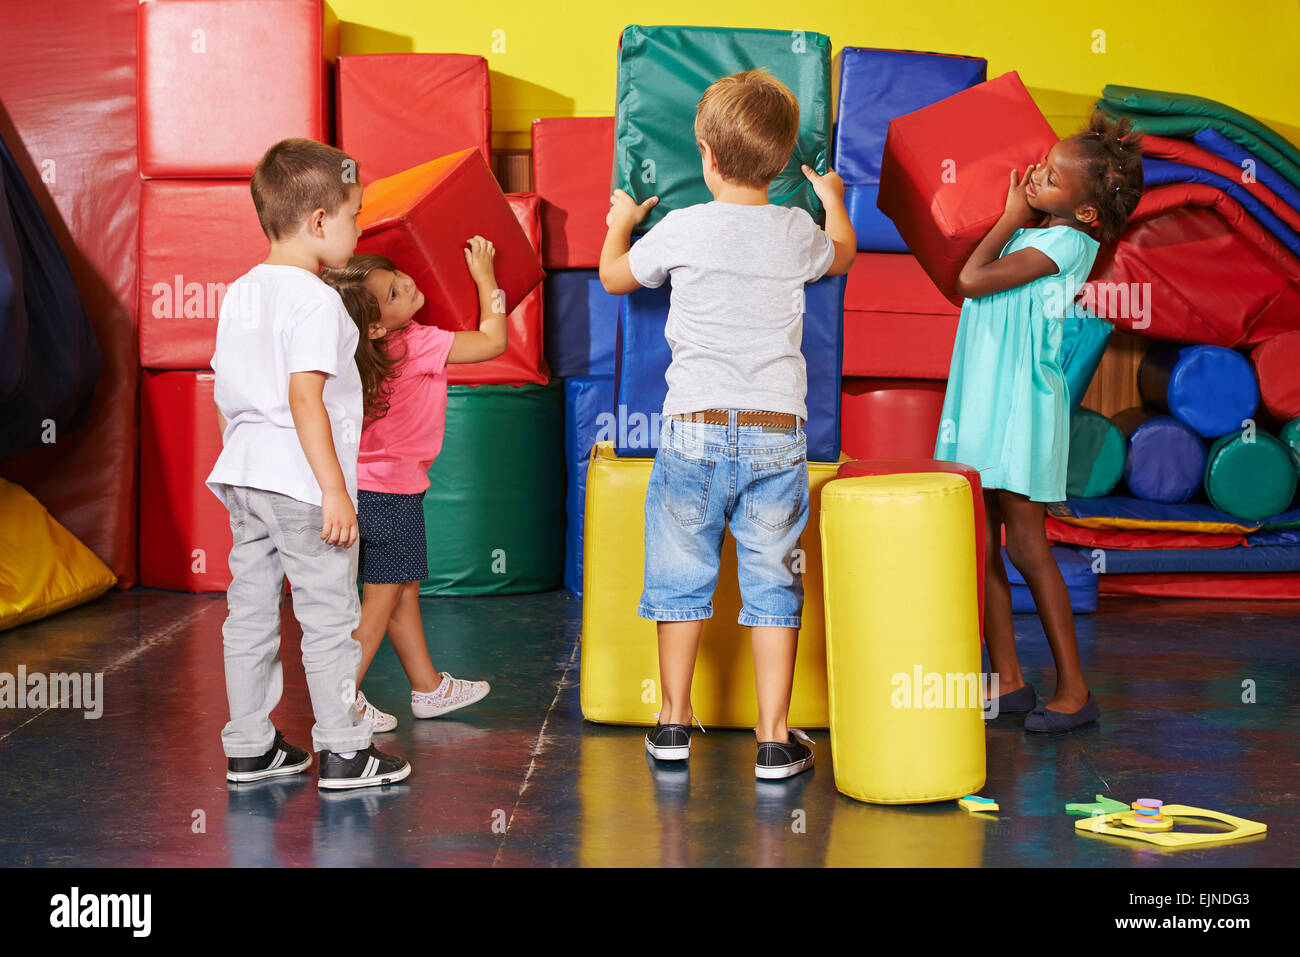 Viele Kinder zusammen in eine Vorschule Fitnessraum aufräumen helfen Stockfoto